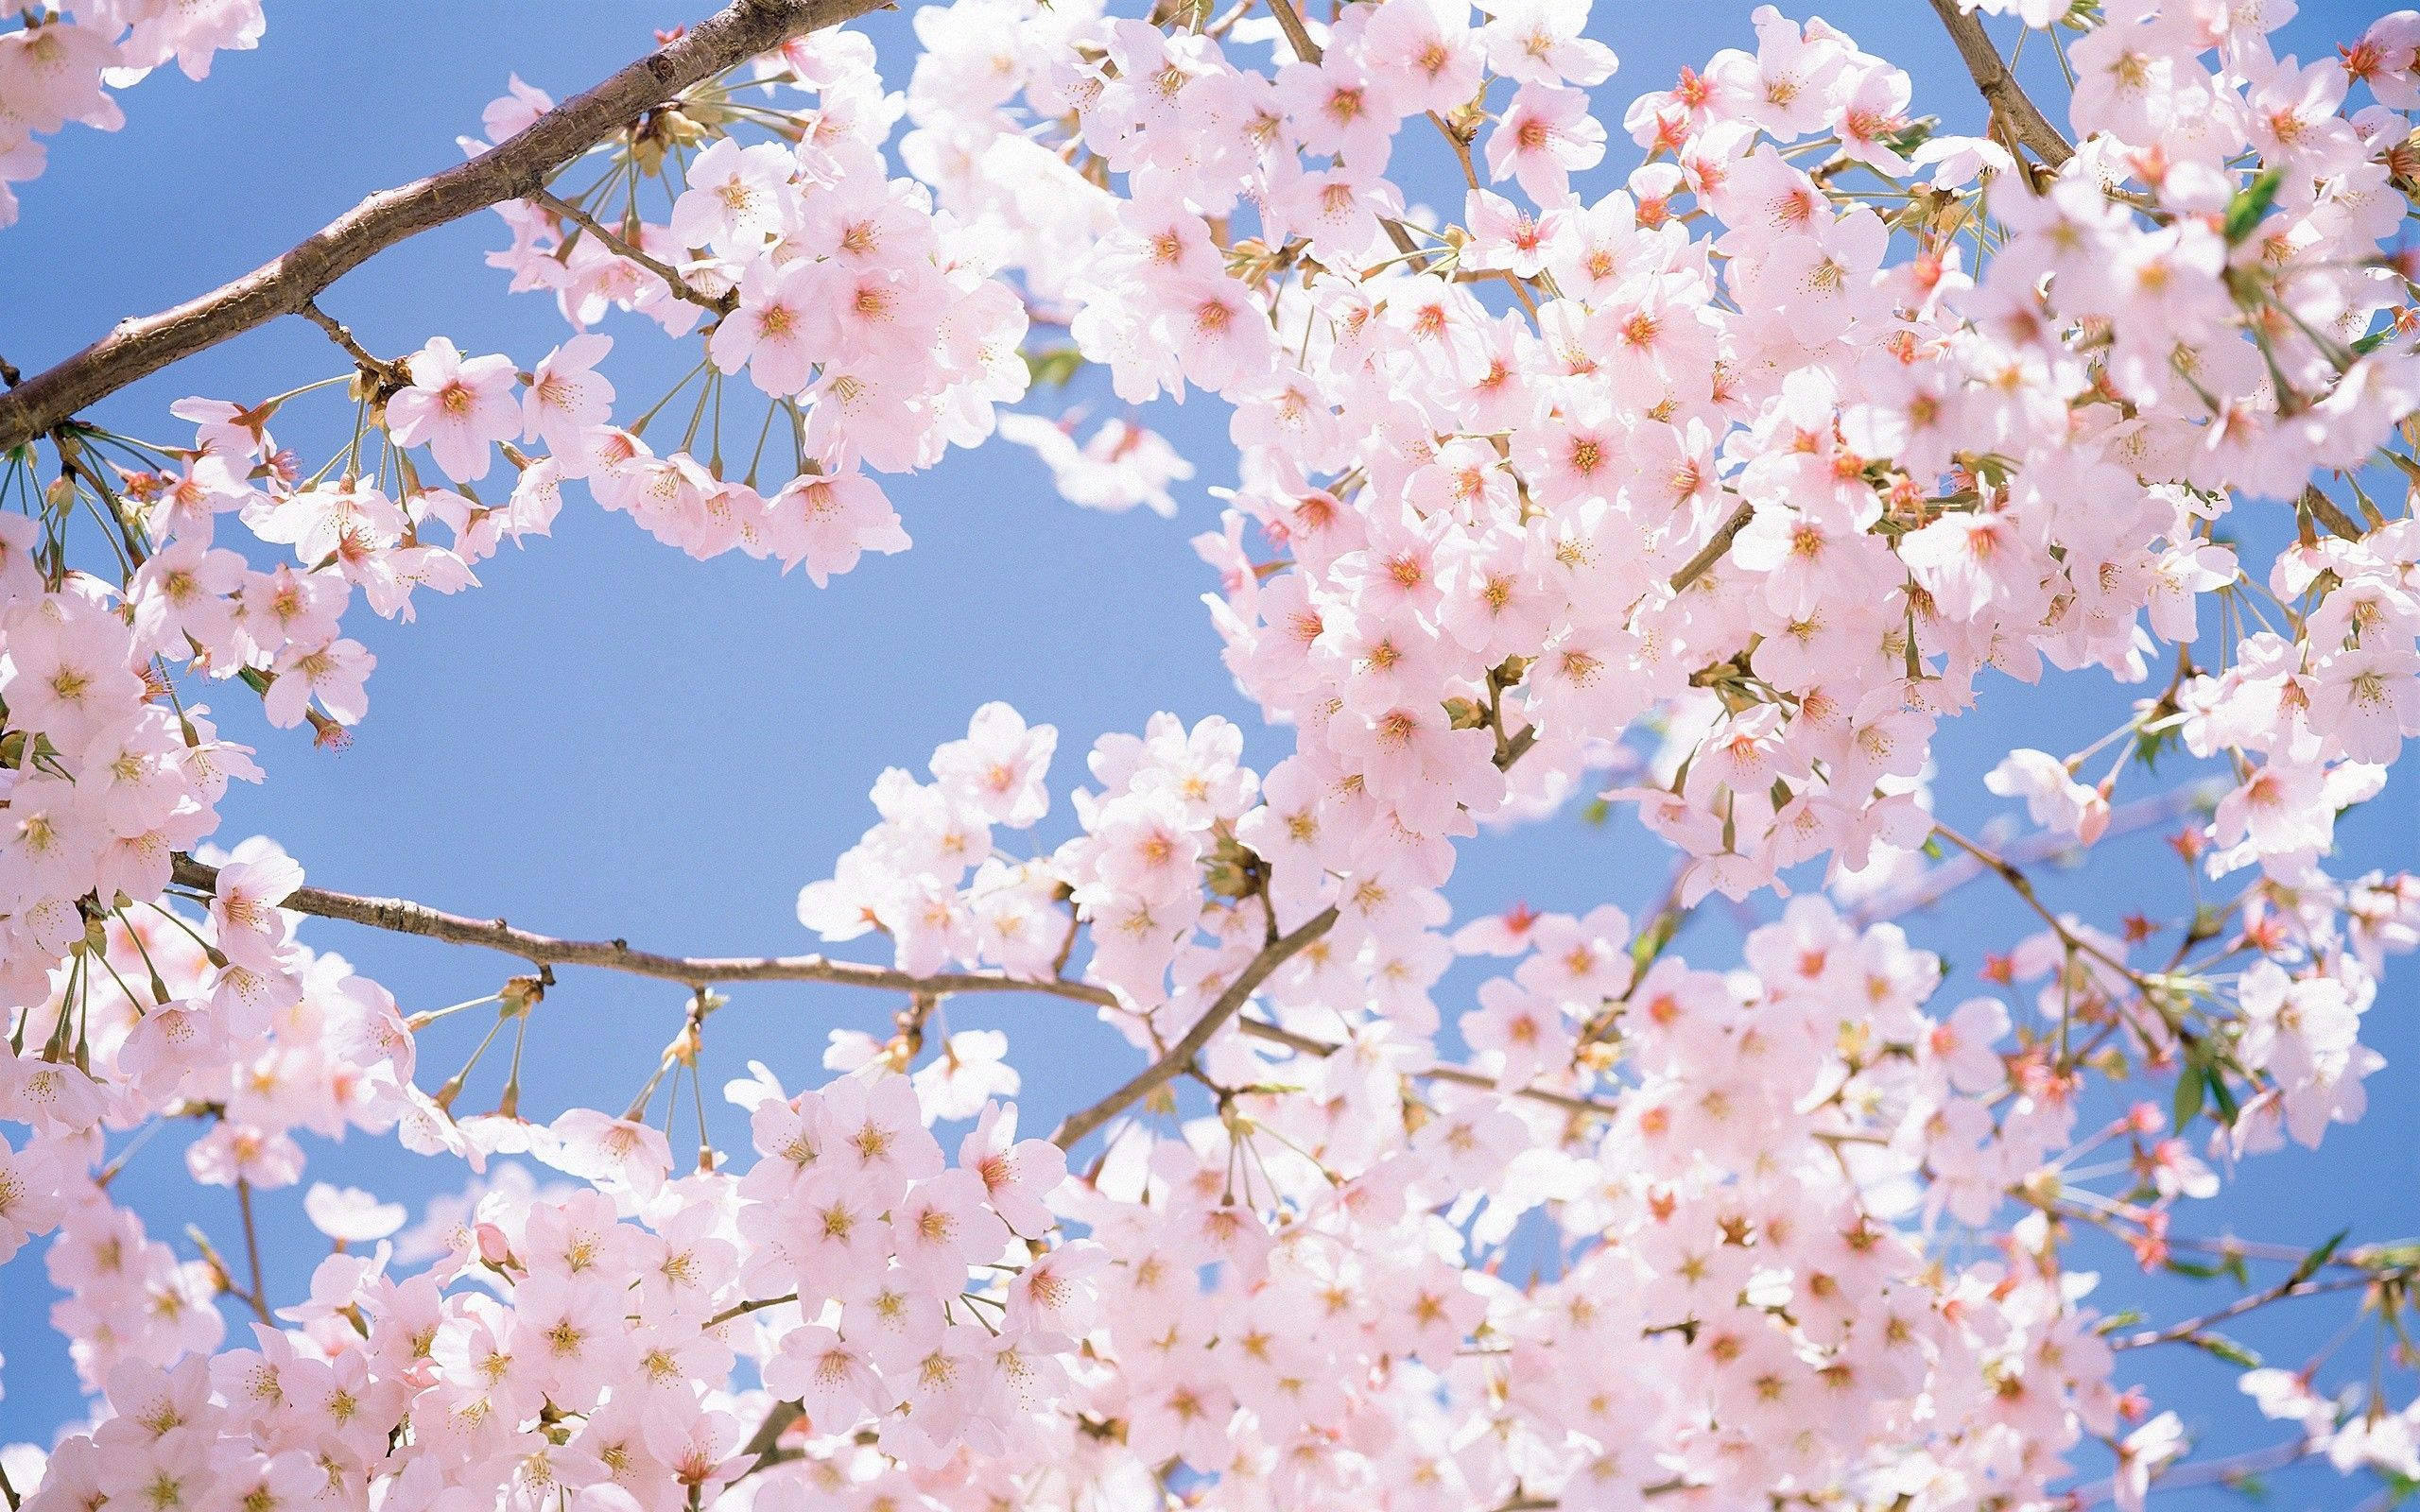 Cherry Blossom Desktop Wallpaper / Cherry Blossom Tree Wallpaper For PC